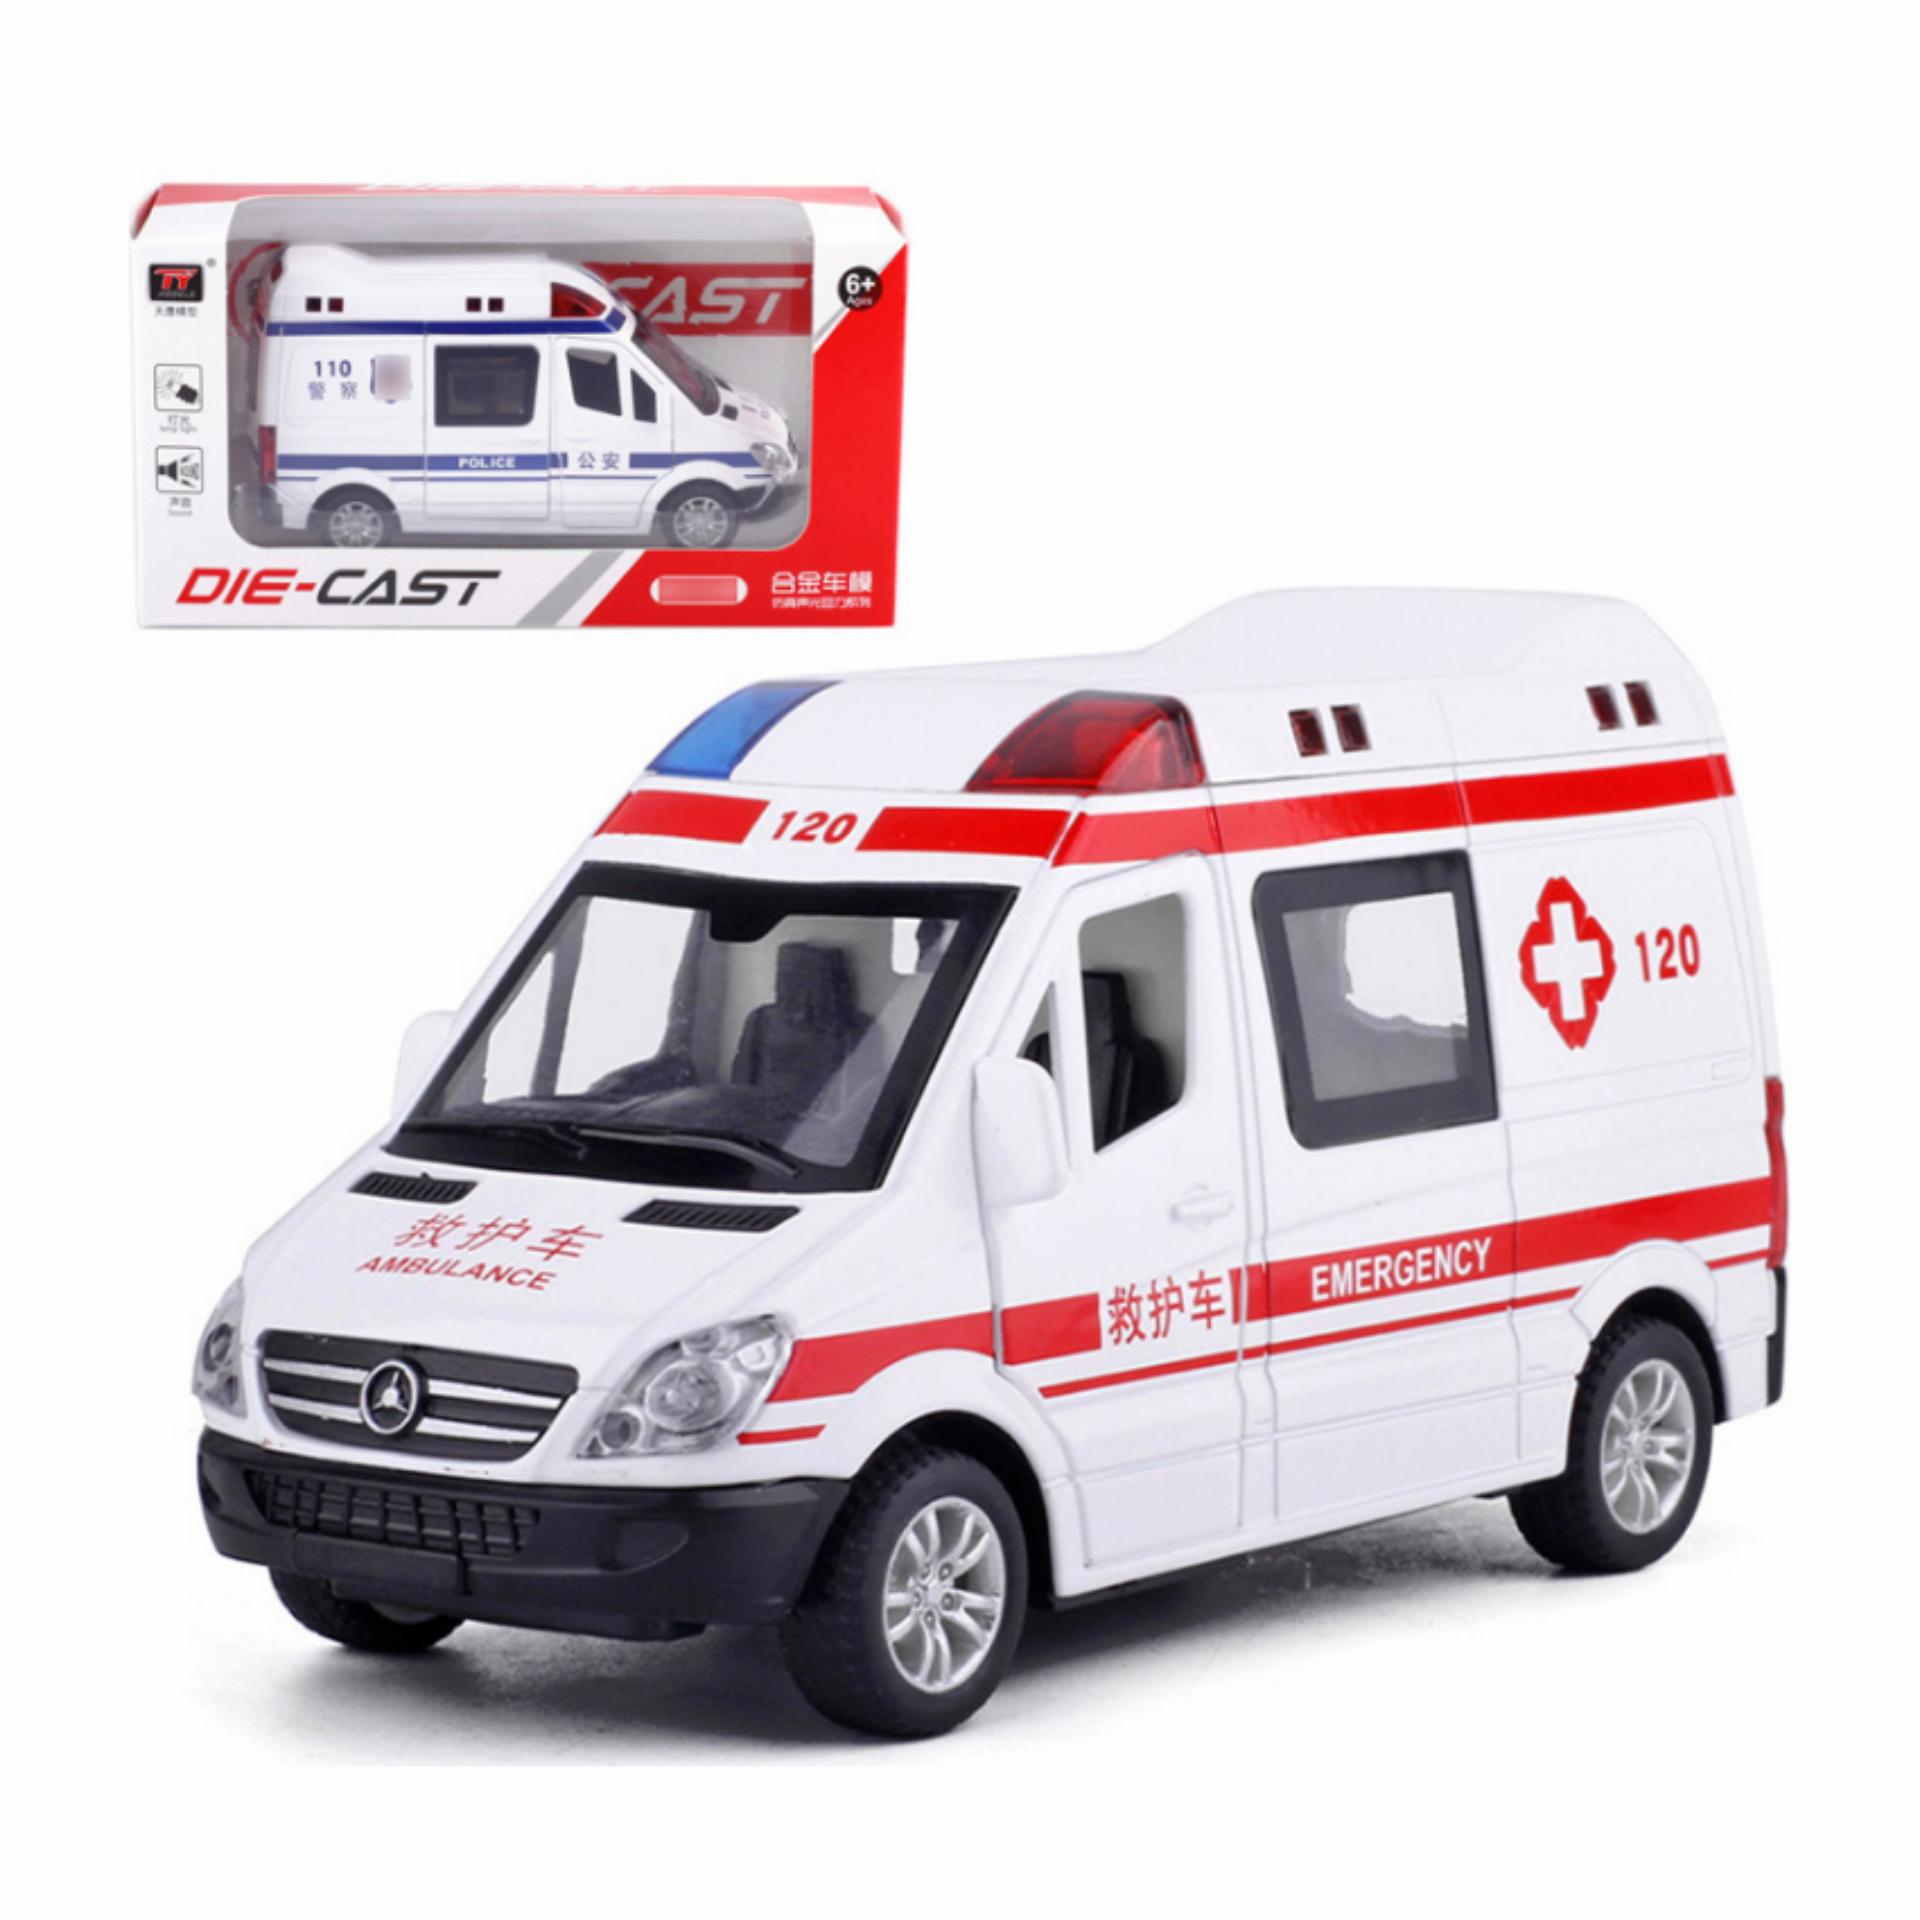 Mô hình xe cứu thương chuyên dụng 115 tỉ lệ 132 Alloy Model OT179  Cửa  Hàng Mô Hình Autono1vn